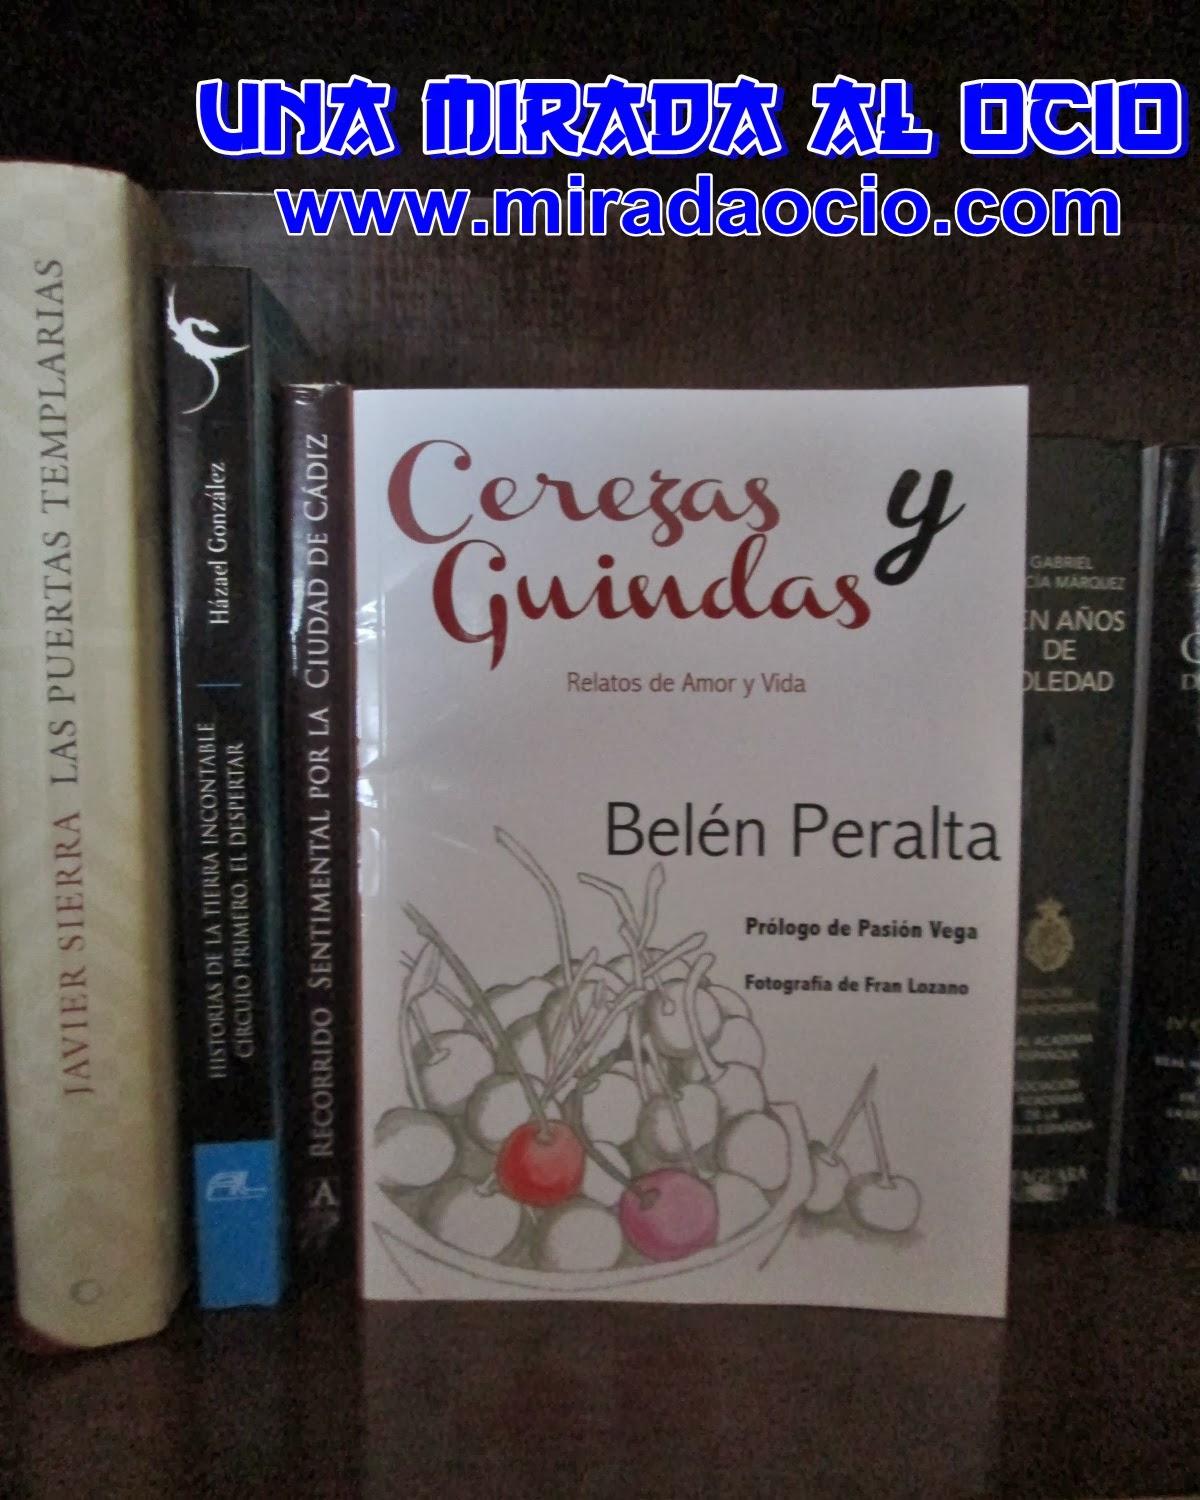 Recomendación literaria: Cerezas y guindas, de Belén Peralta